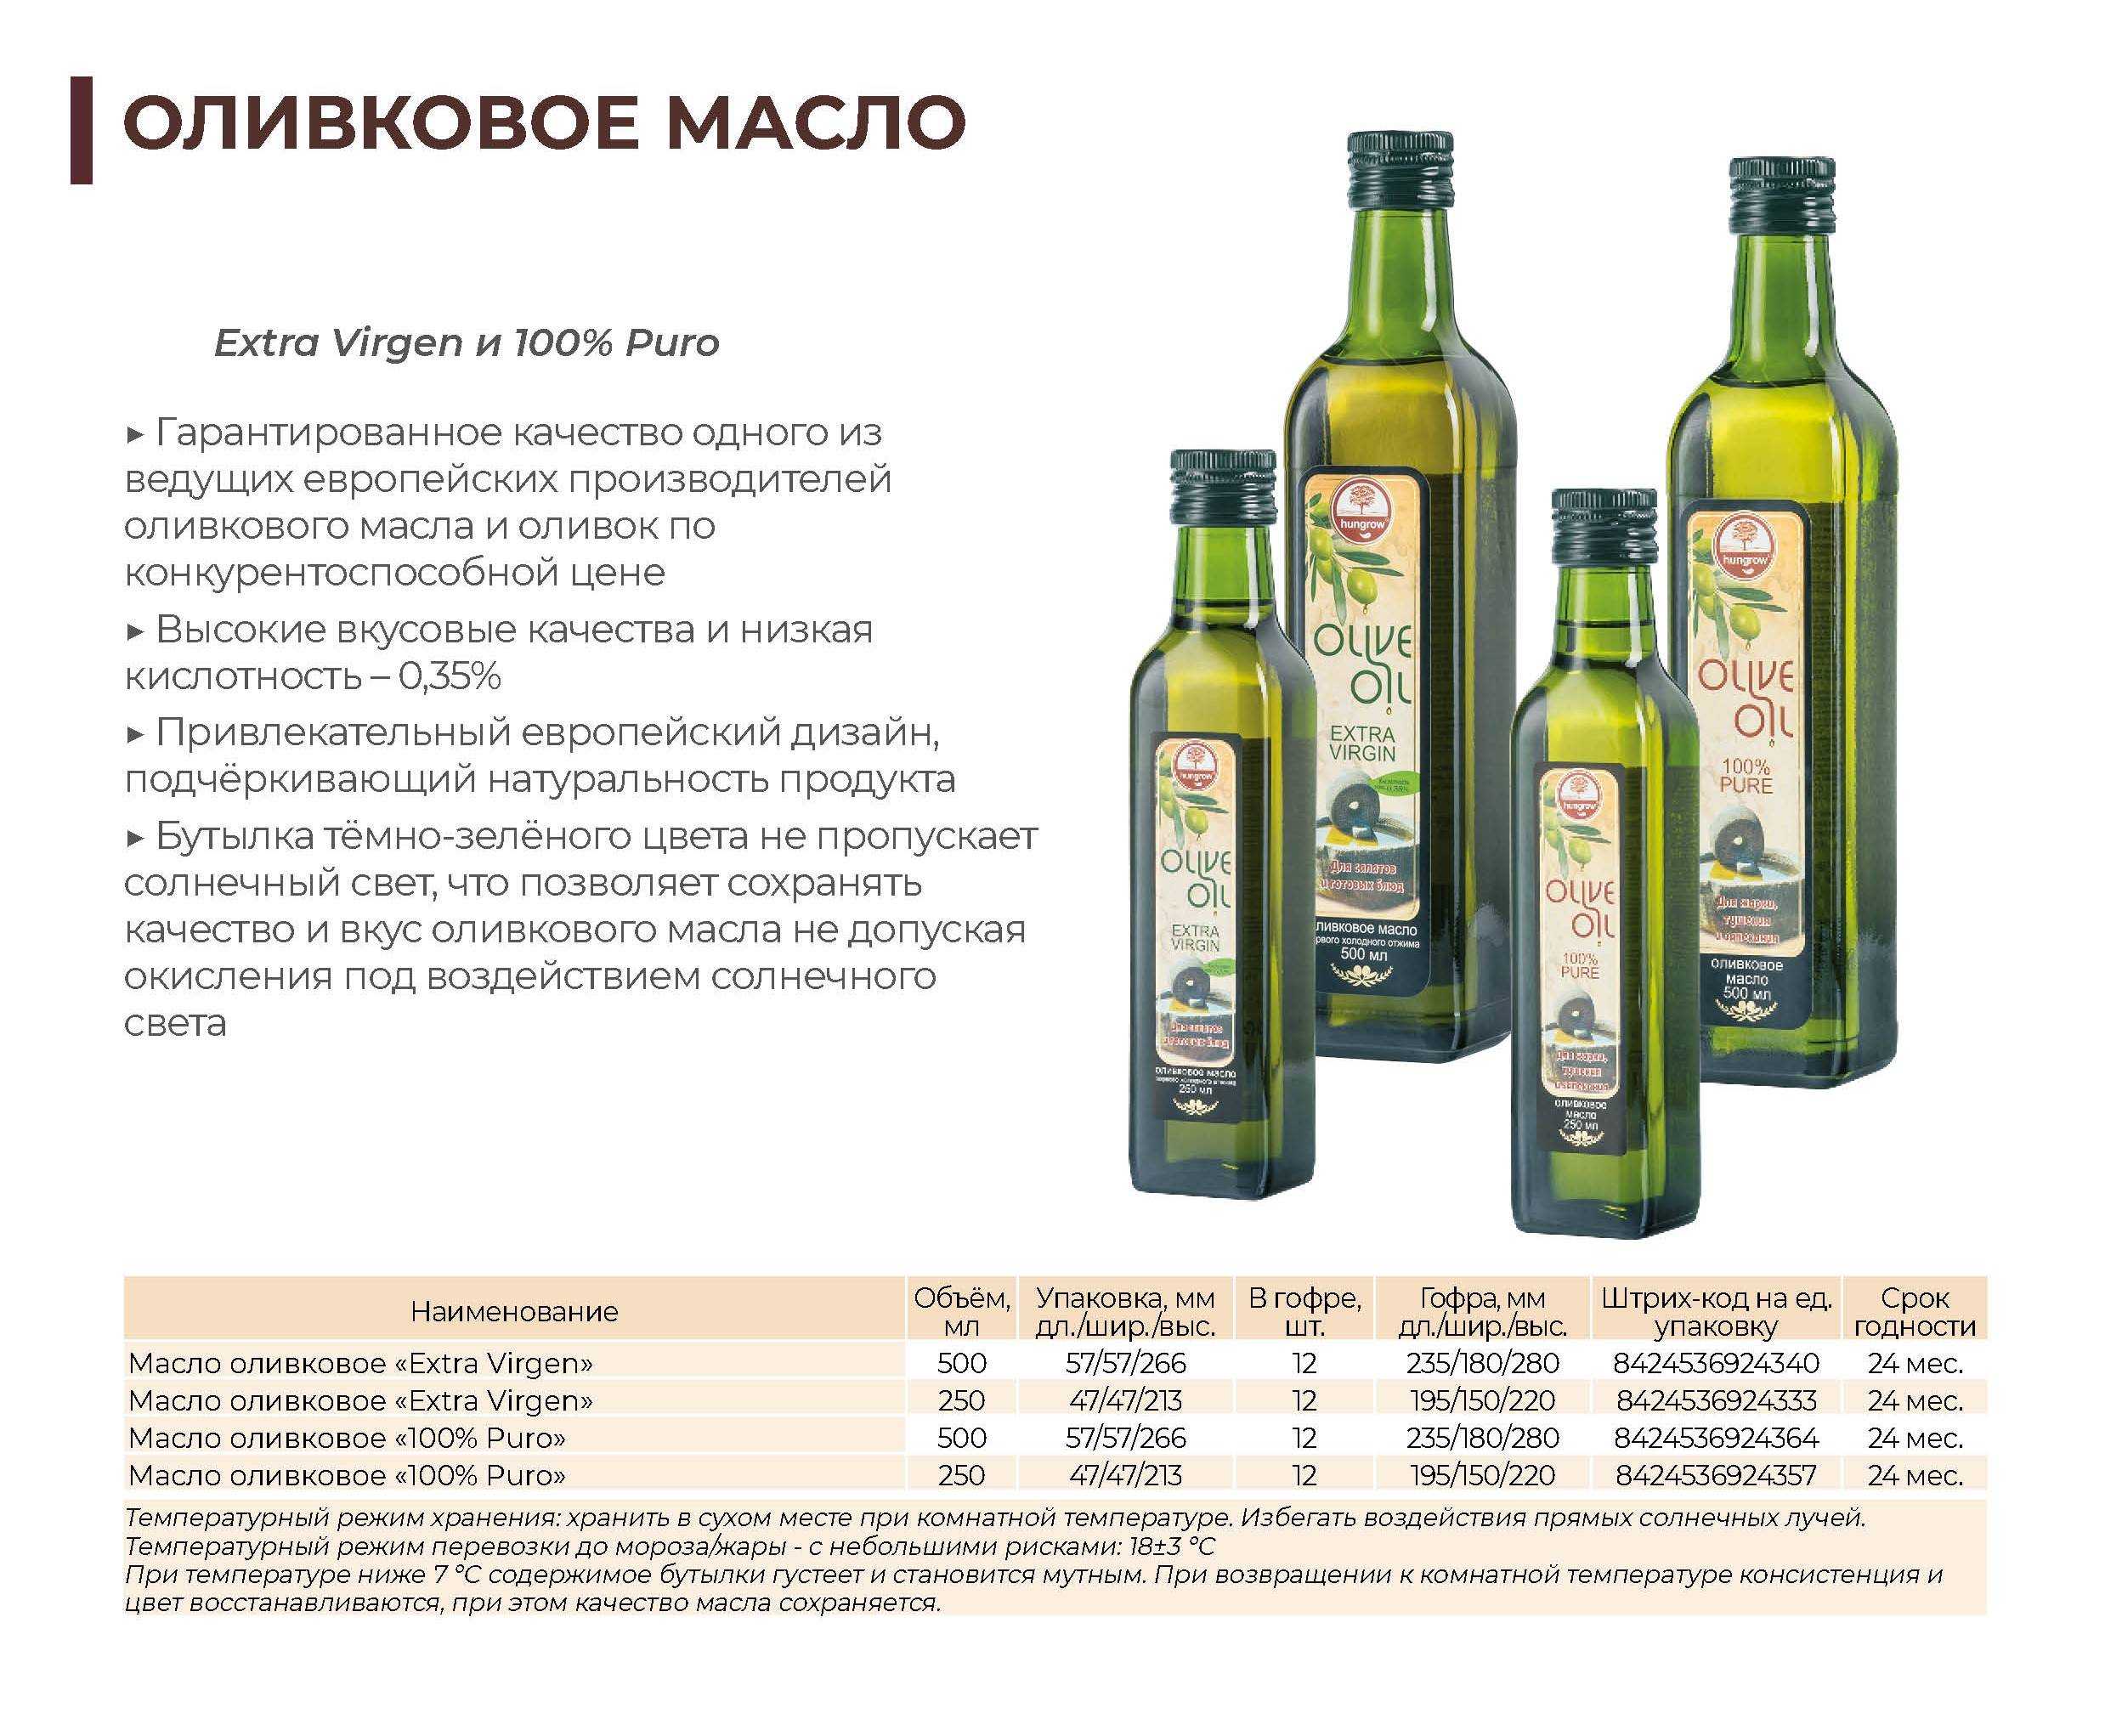 Как принимать оливковое масло: польза и вред «жидкого золота»